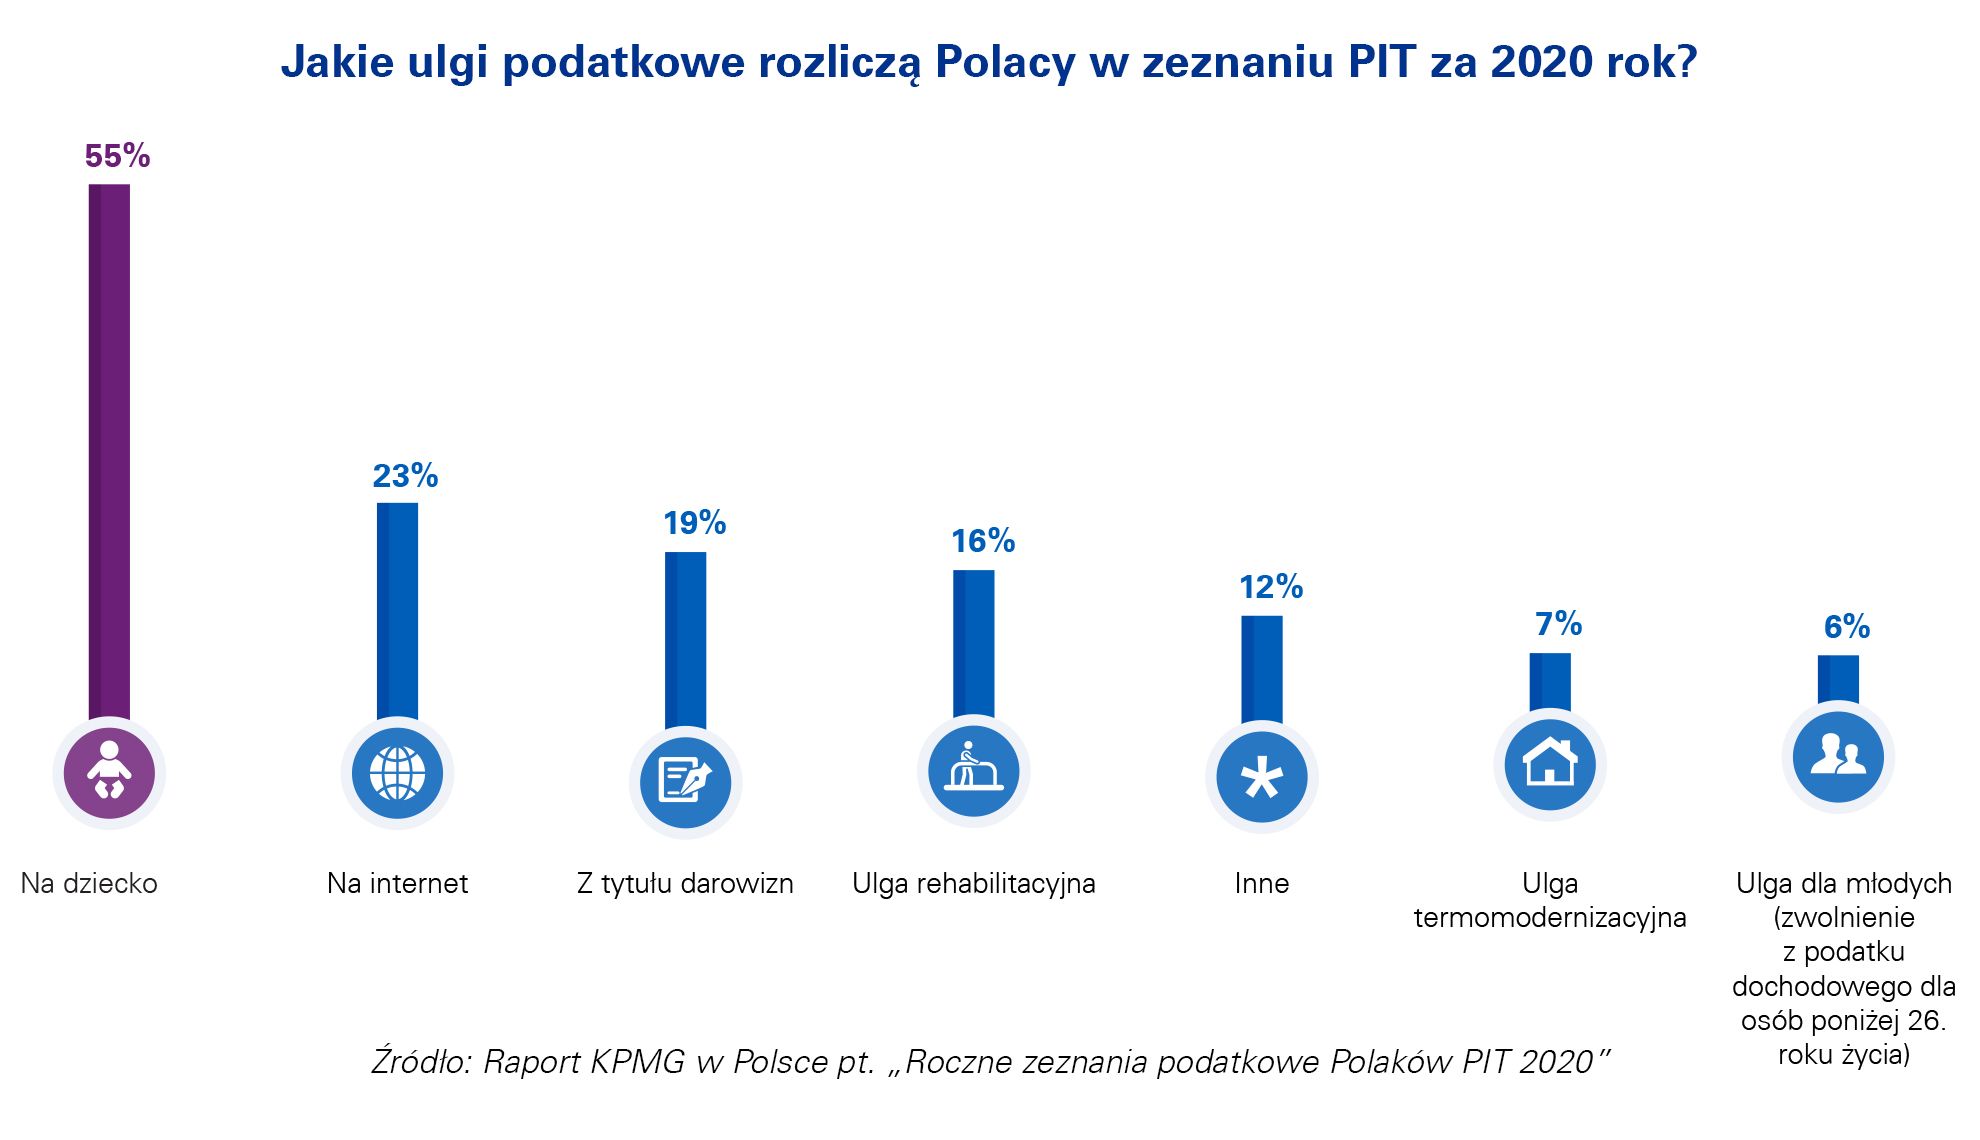 Jakie ulgi podatkowe rozliczą Polacy w zeznaniu PIT za 2020 rok?